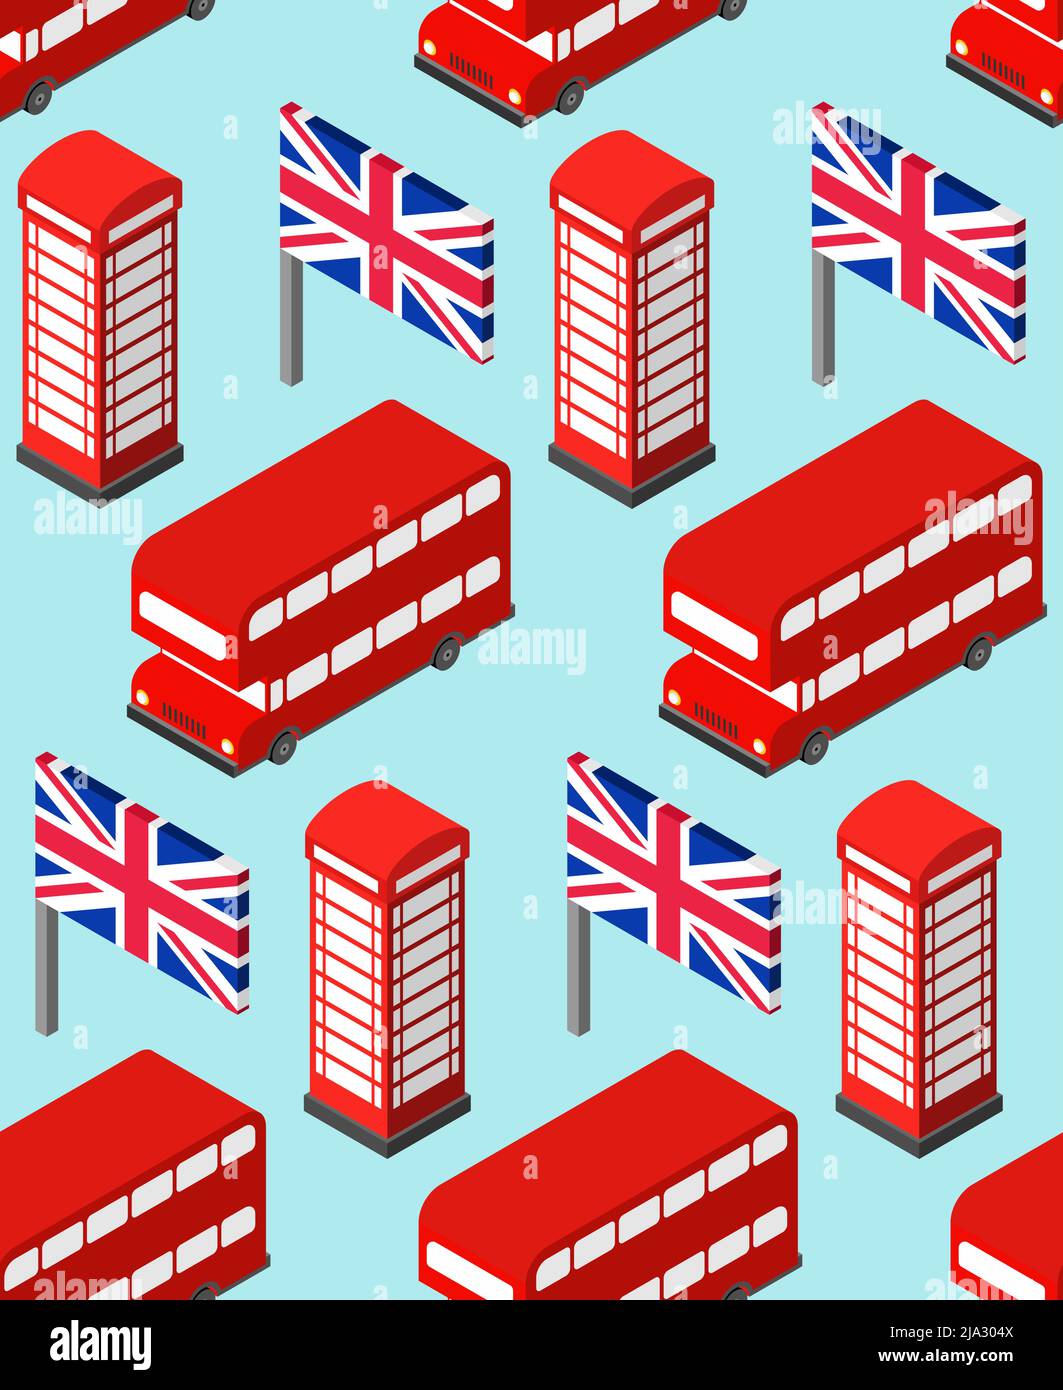 Motif Londres sans coutures. Royaume-Uni. Icône représentant un monument de Londres. Doubledecker rouge et cabine téléphonique. Drapeau britannique et tour Big Ben Illustration de Vecteur